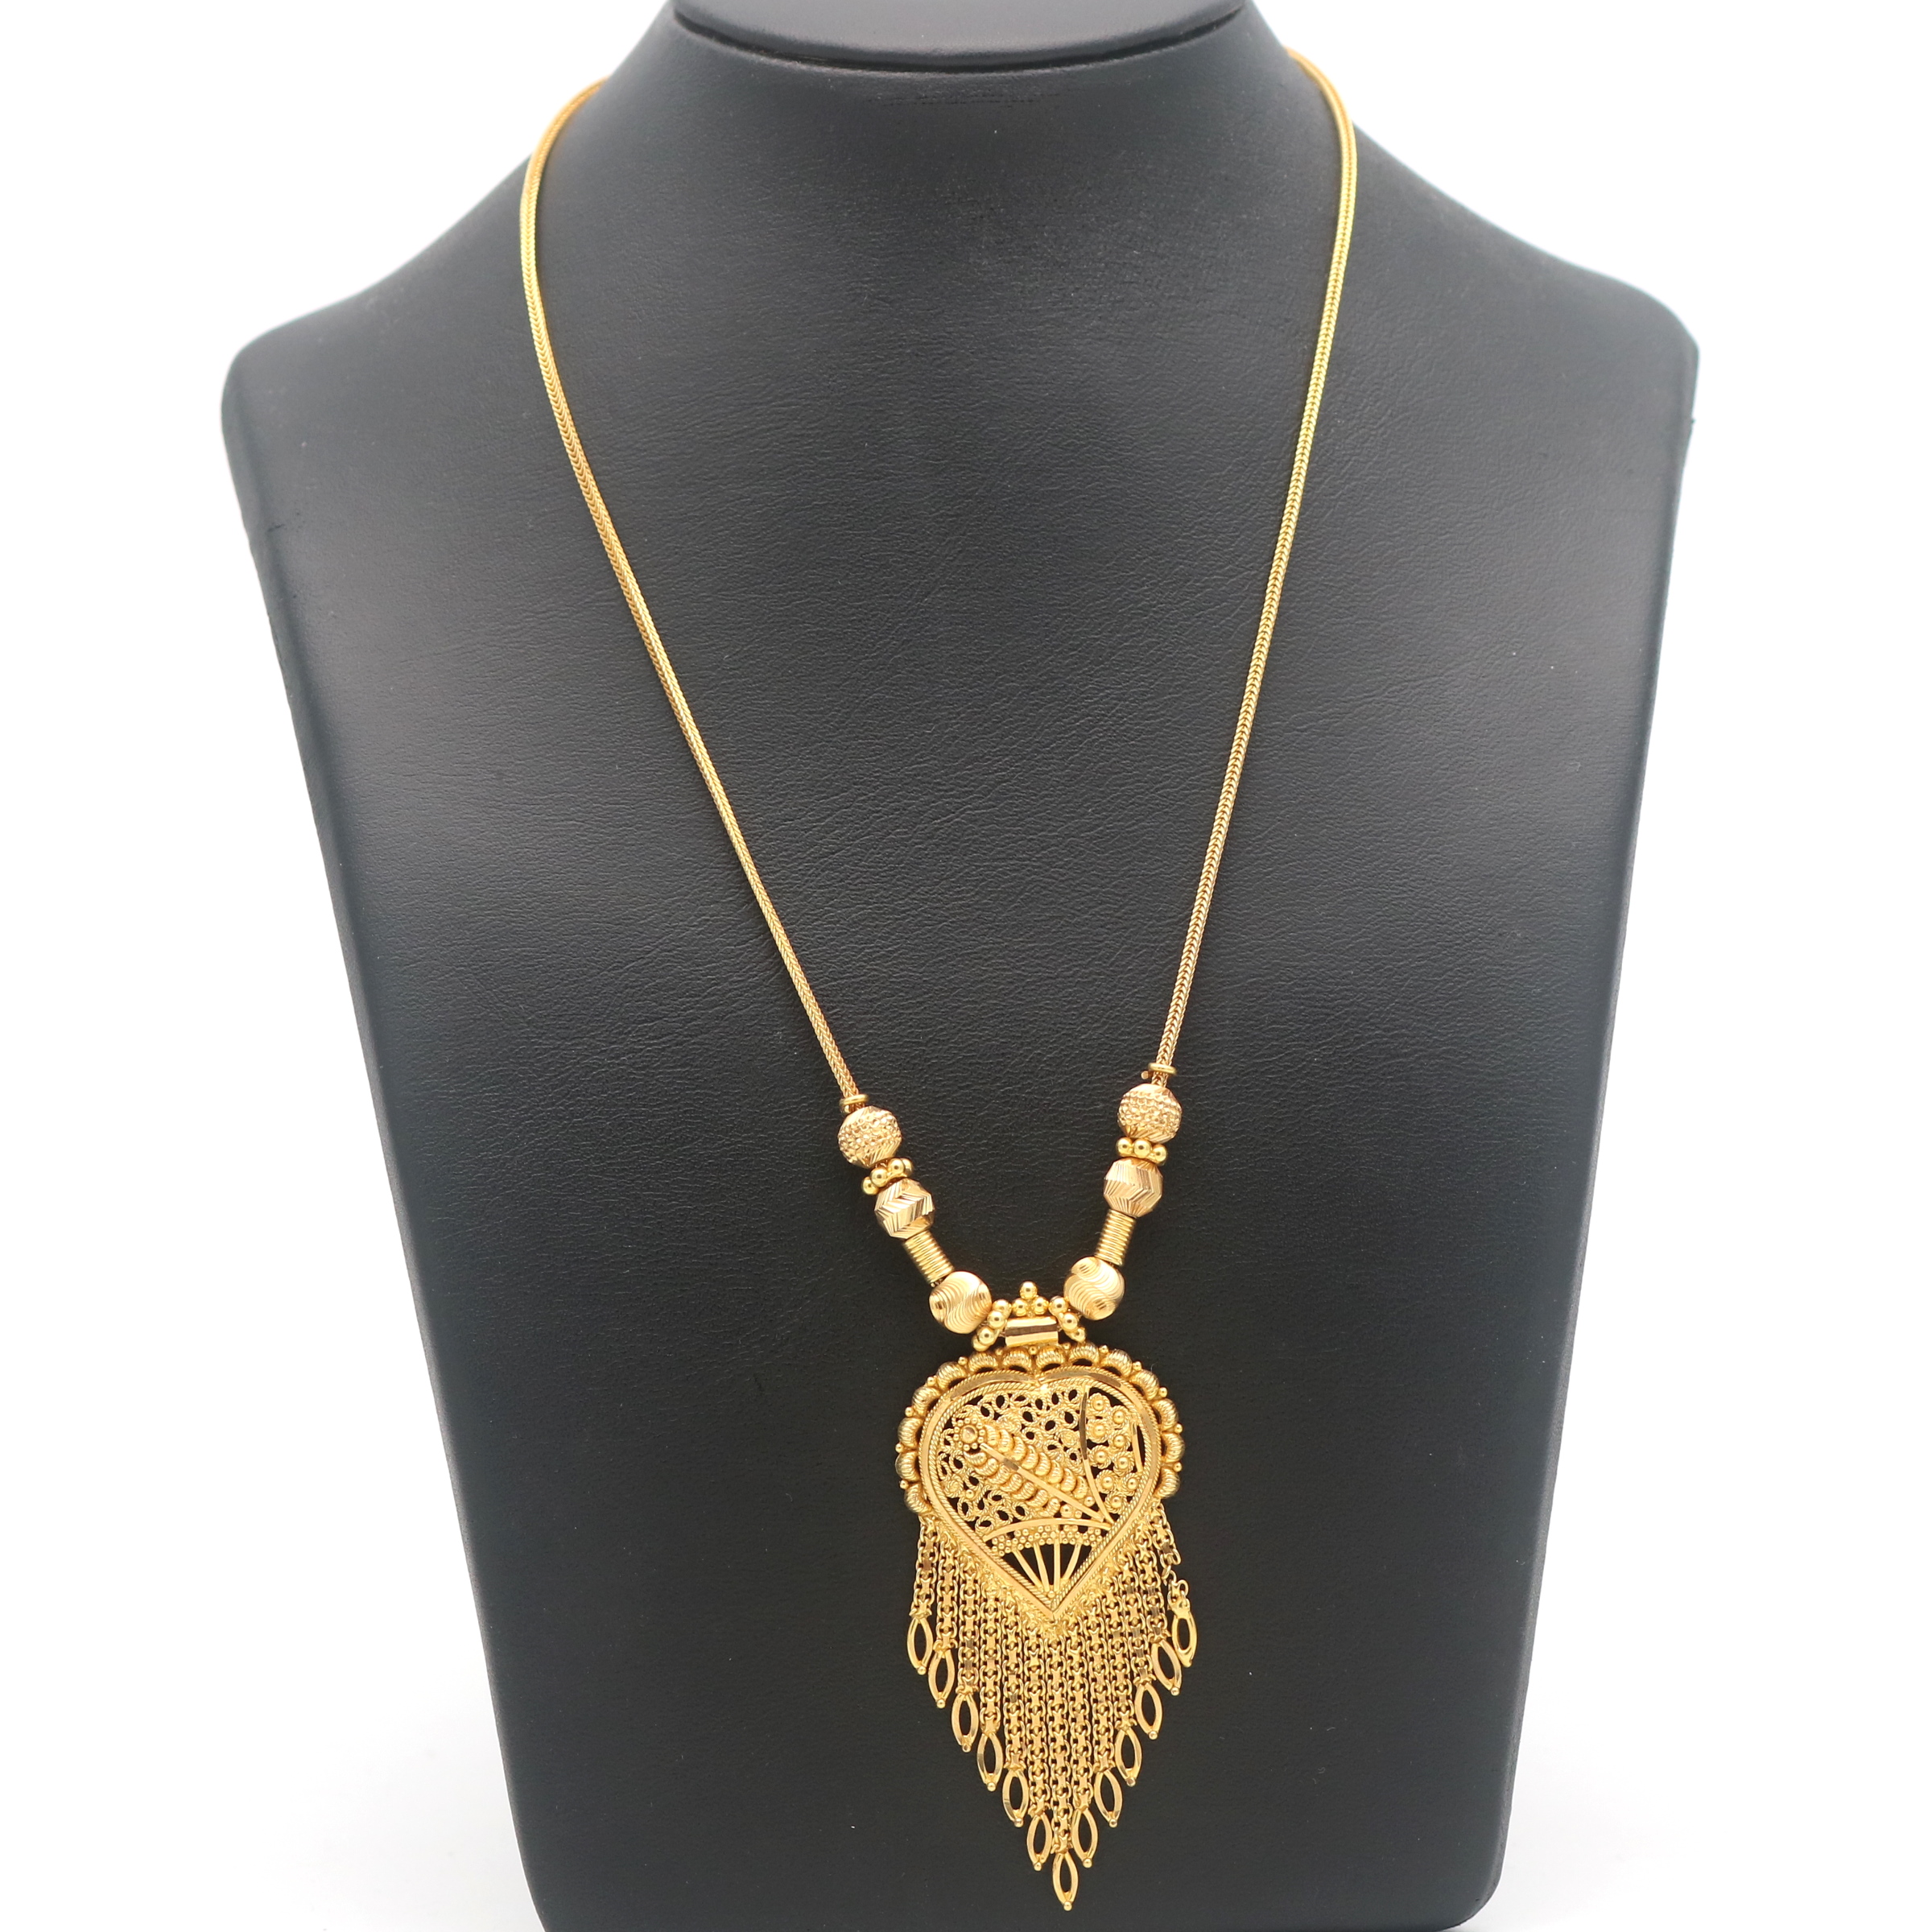 Collier aus 585er Gelbgold, 14 Kt, Länge 54 cm - zeitlose Eleganz für jeden  Anlass | Juweliero - Juwelier Online Shop & Goldankauf